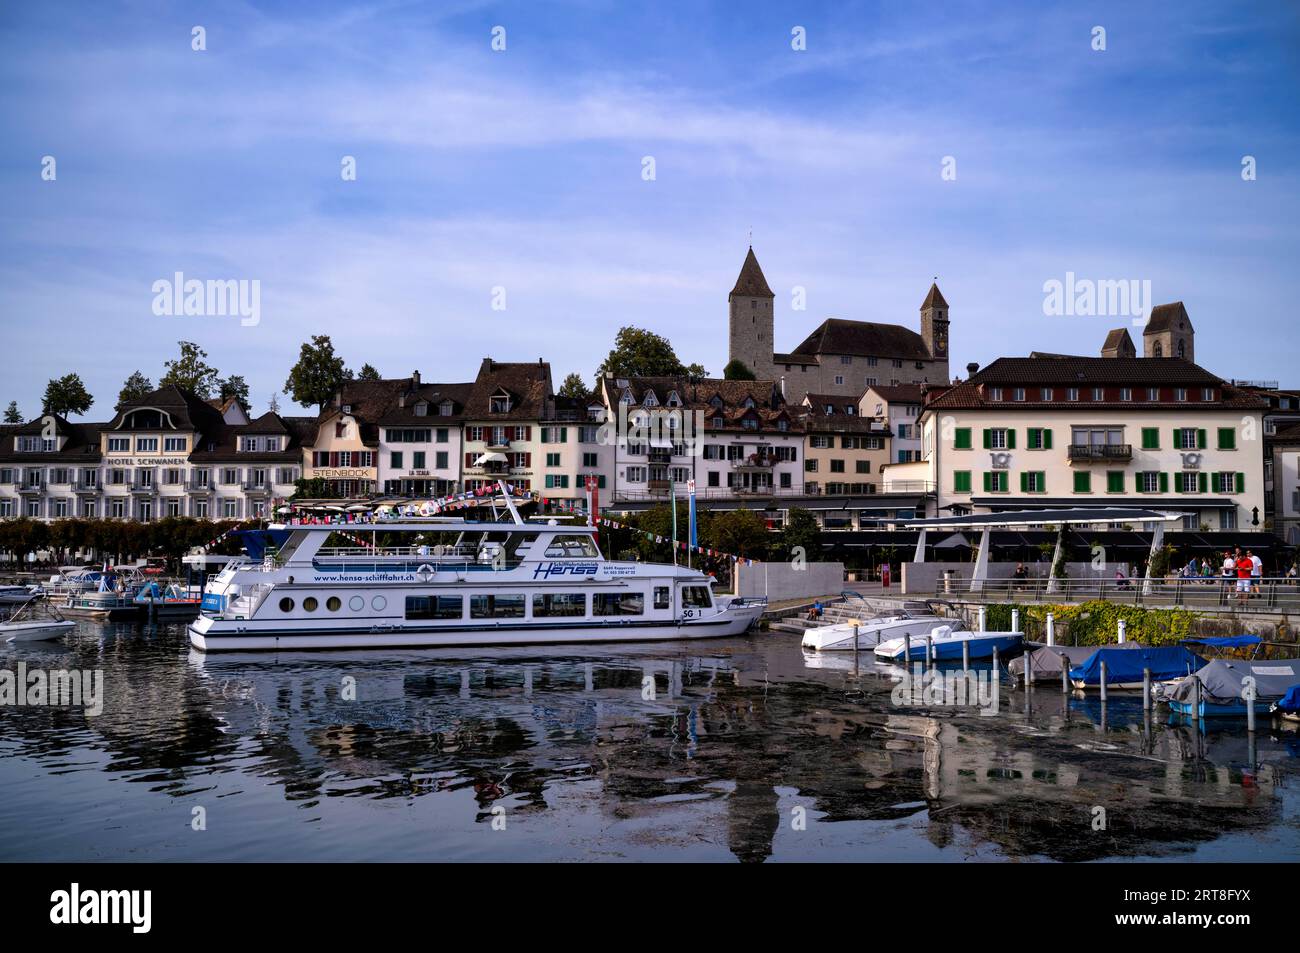 Traghetto nel porto, lago di Zurigo, passeggiata sul lago, castello, centro storico, Rapperswil-Jona, Canton St Gallen, SG, Svizzera Foto Stock